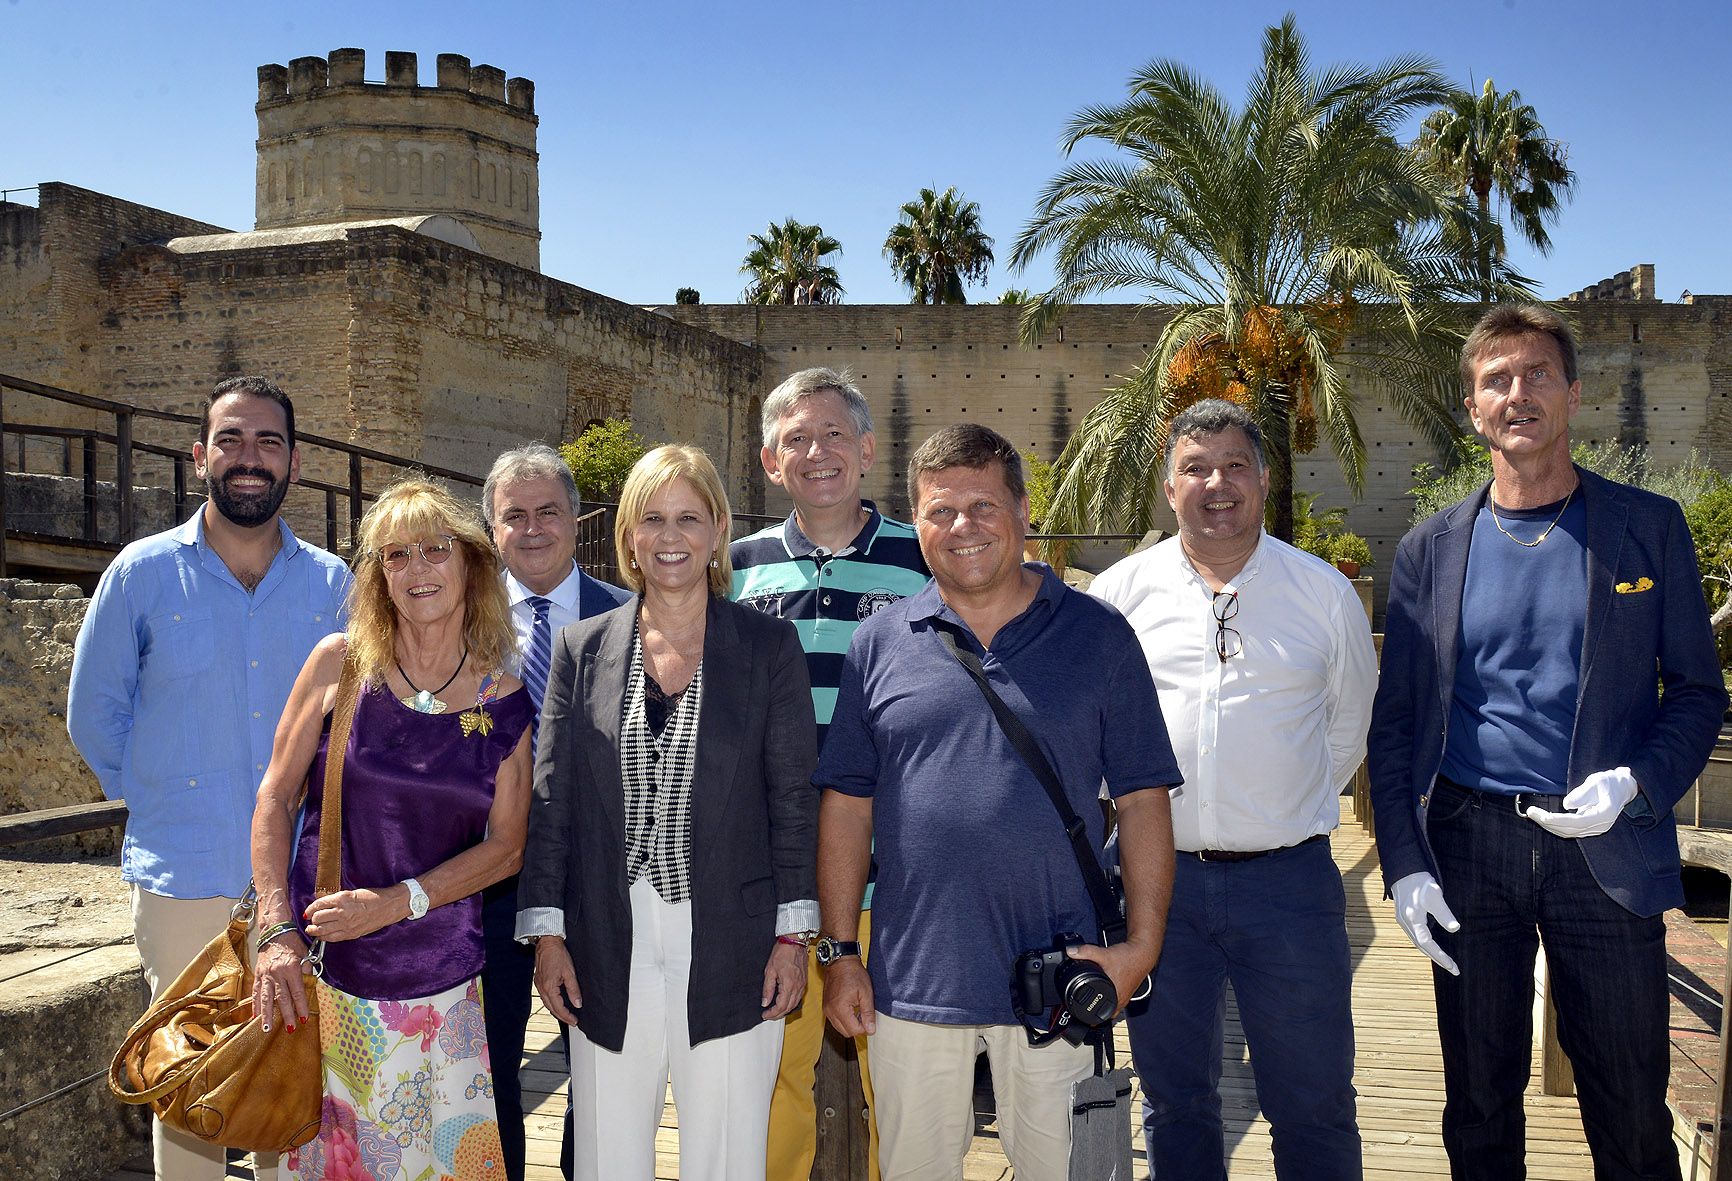 La alcaldesa de Jerez junto a agentes de viajes suizos expertos en turismo de la 'buena mesa'.